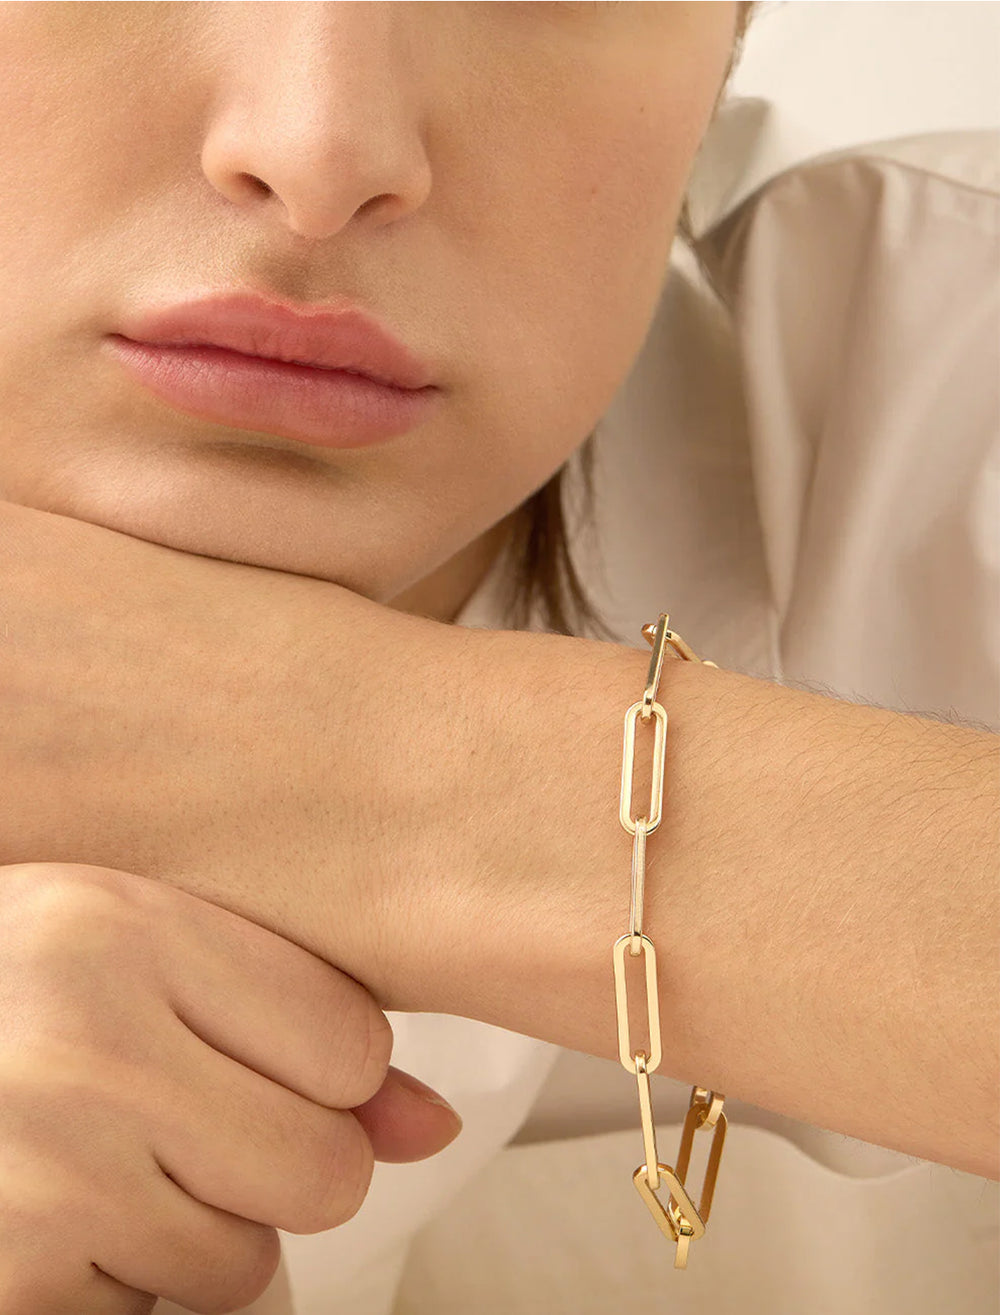 Model wearing Jenny Bird's andi slim bracelet in gold.